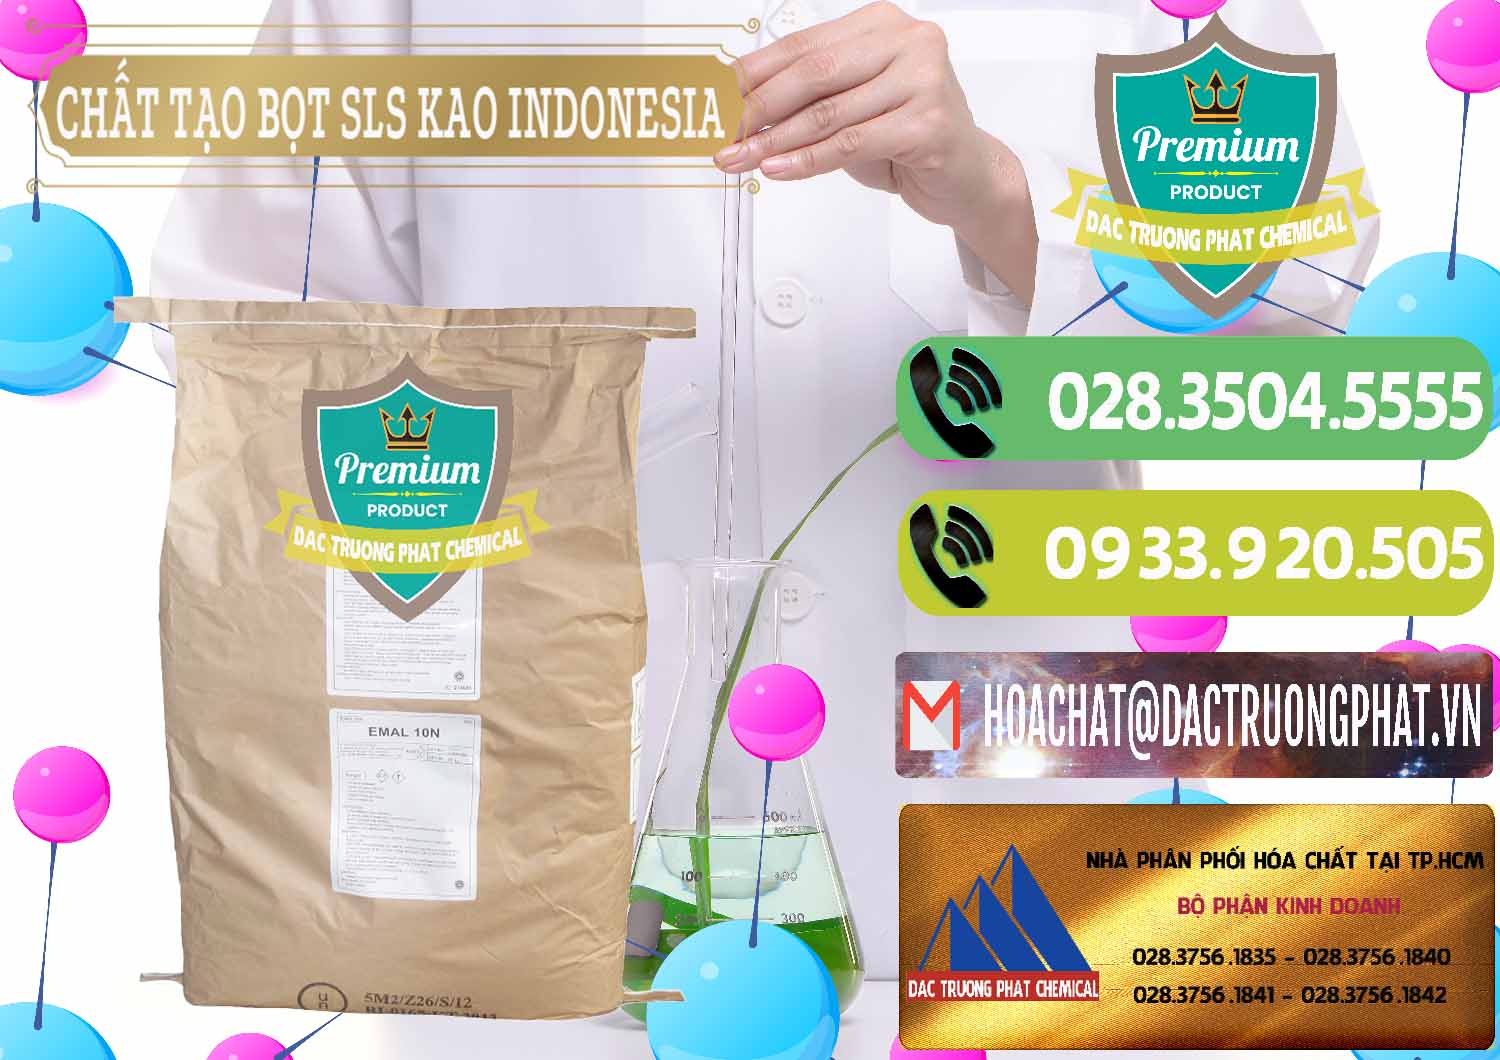 Cty chuyên nhập khẩu - bán Chất Tạo Bọt SLS - Sodium Lauryl Sulfate EMAL 10N KAO Indonesia - 0047 - Nơi chuyên kinh doanh - phân phối hóa chất tại TP.HCM - hoachatmientay.vn